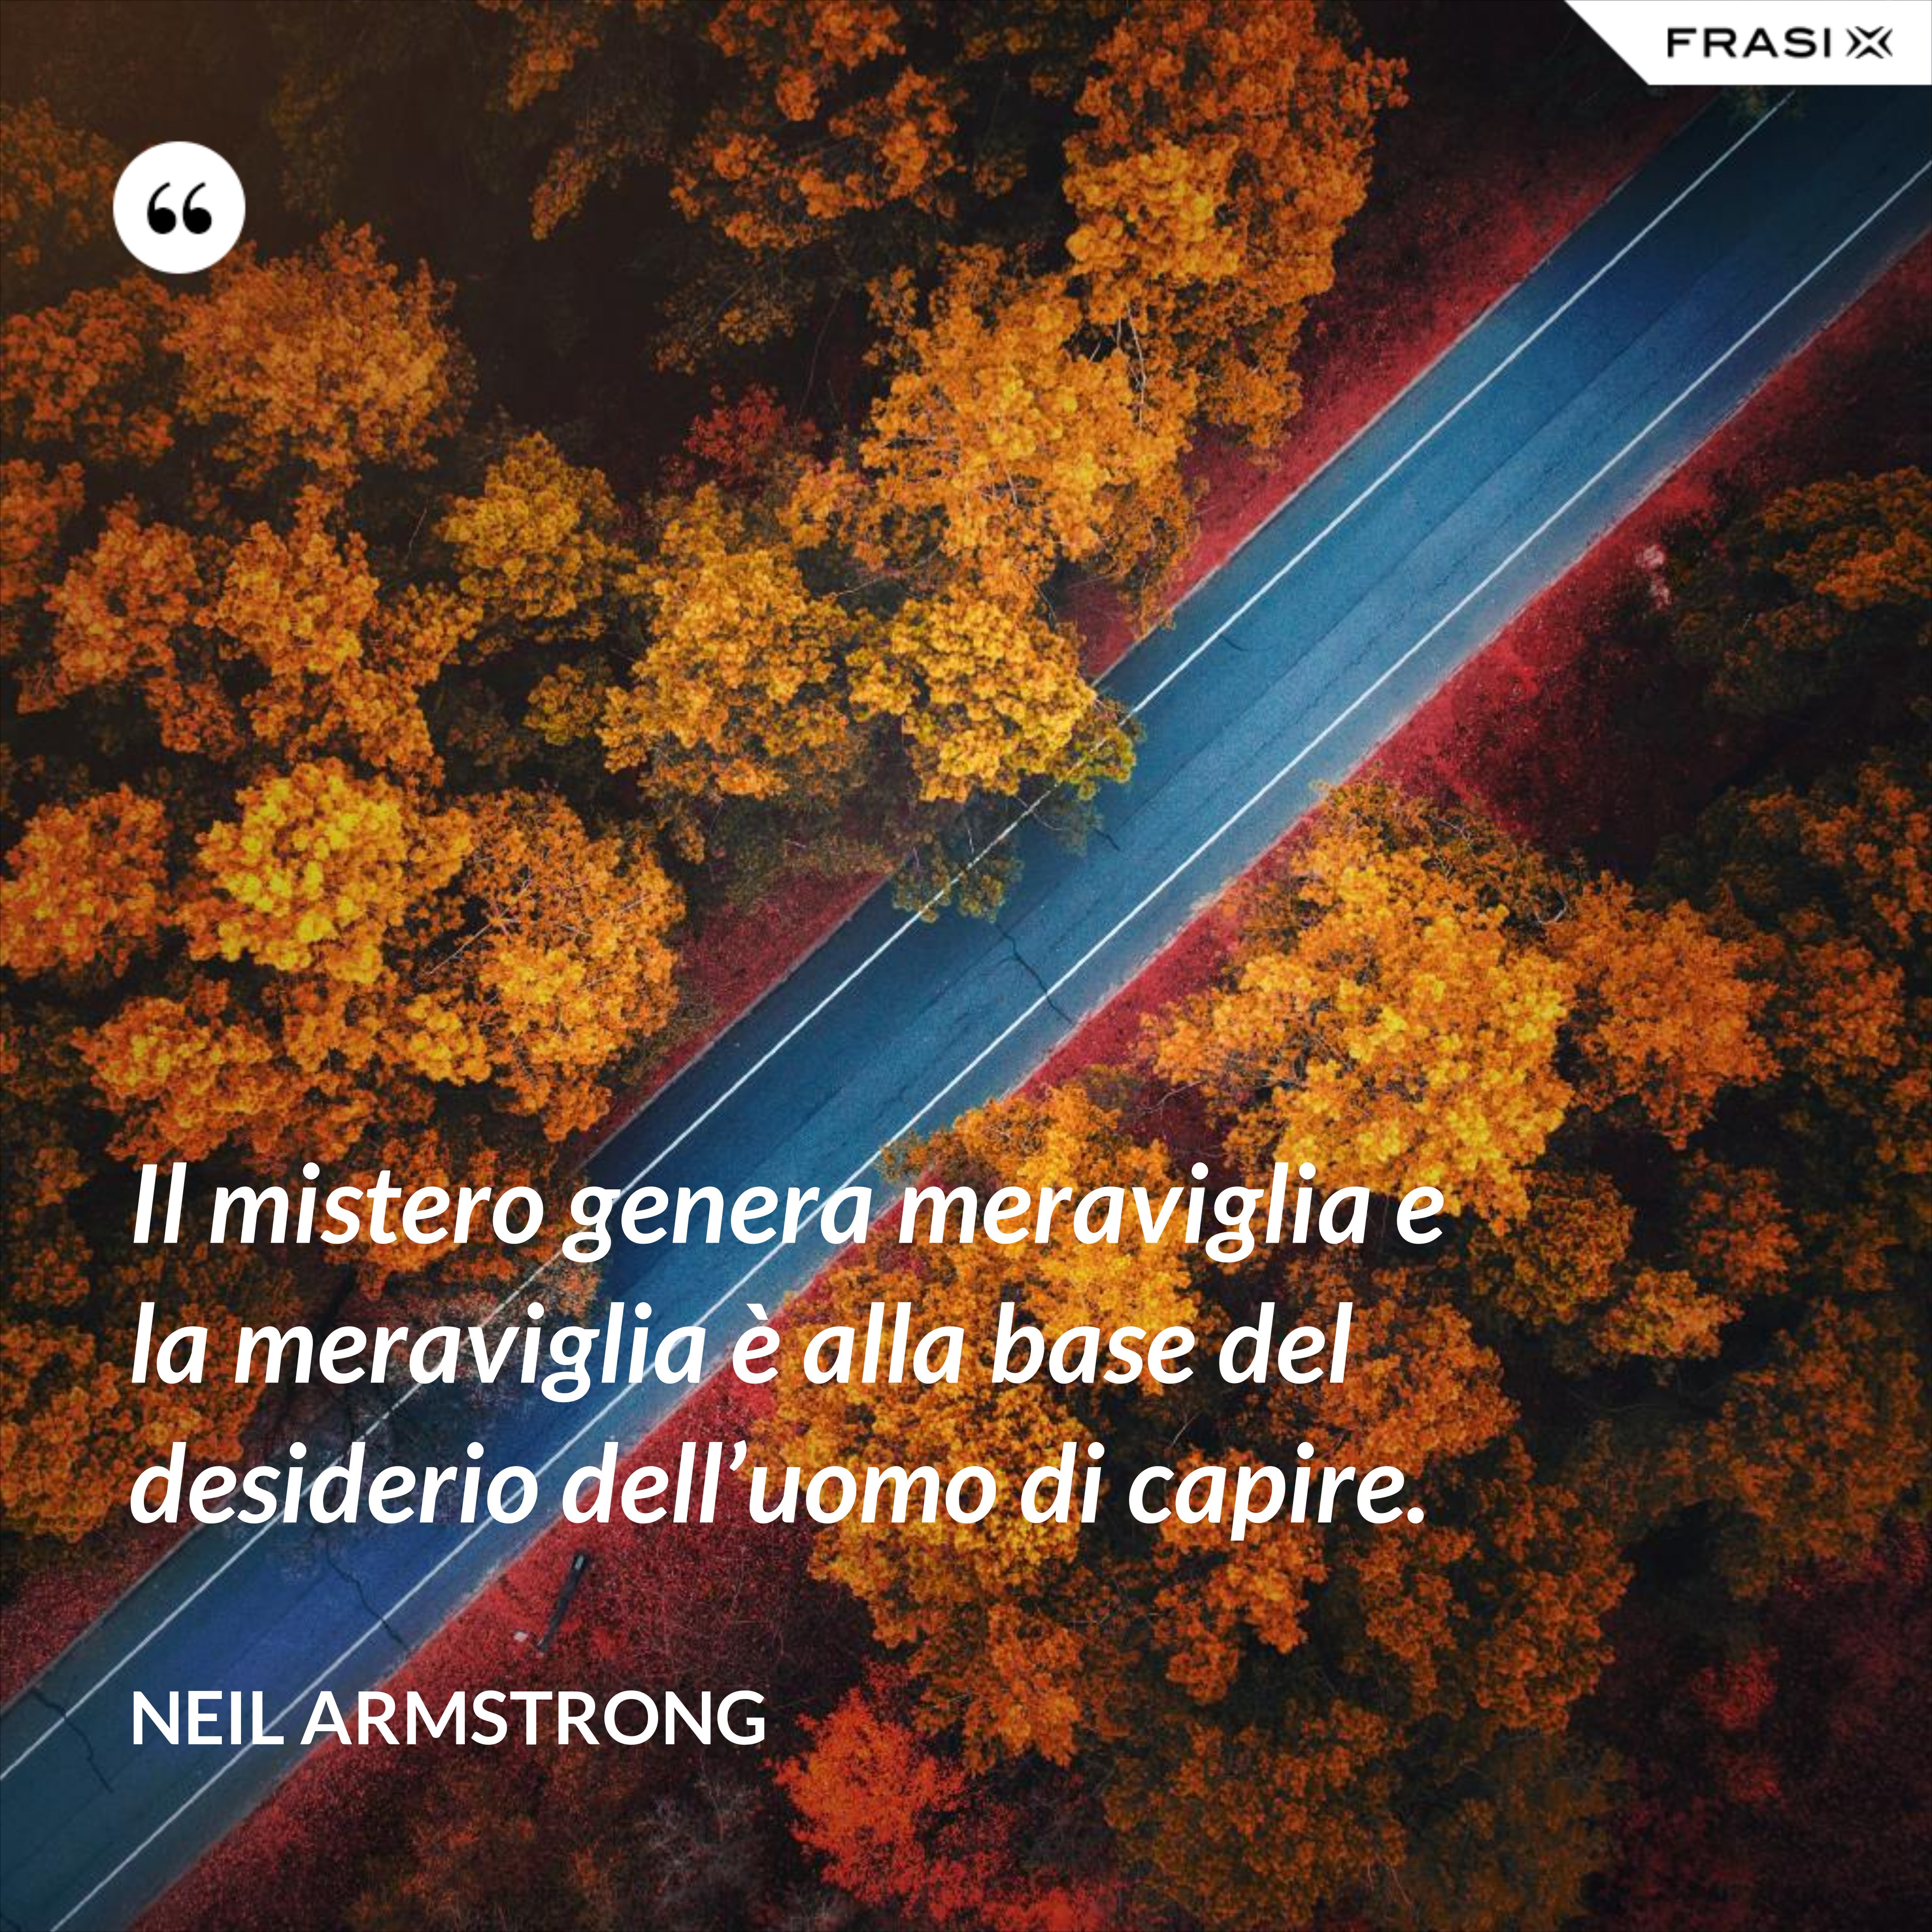 Il mistero genera meraviglia e la meraviglia è alla base del desiderio dell’uomo di capire. - Neil Armstrong